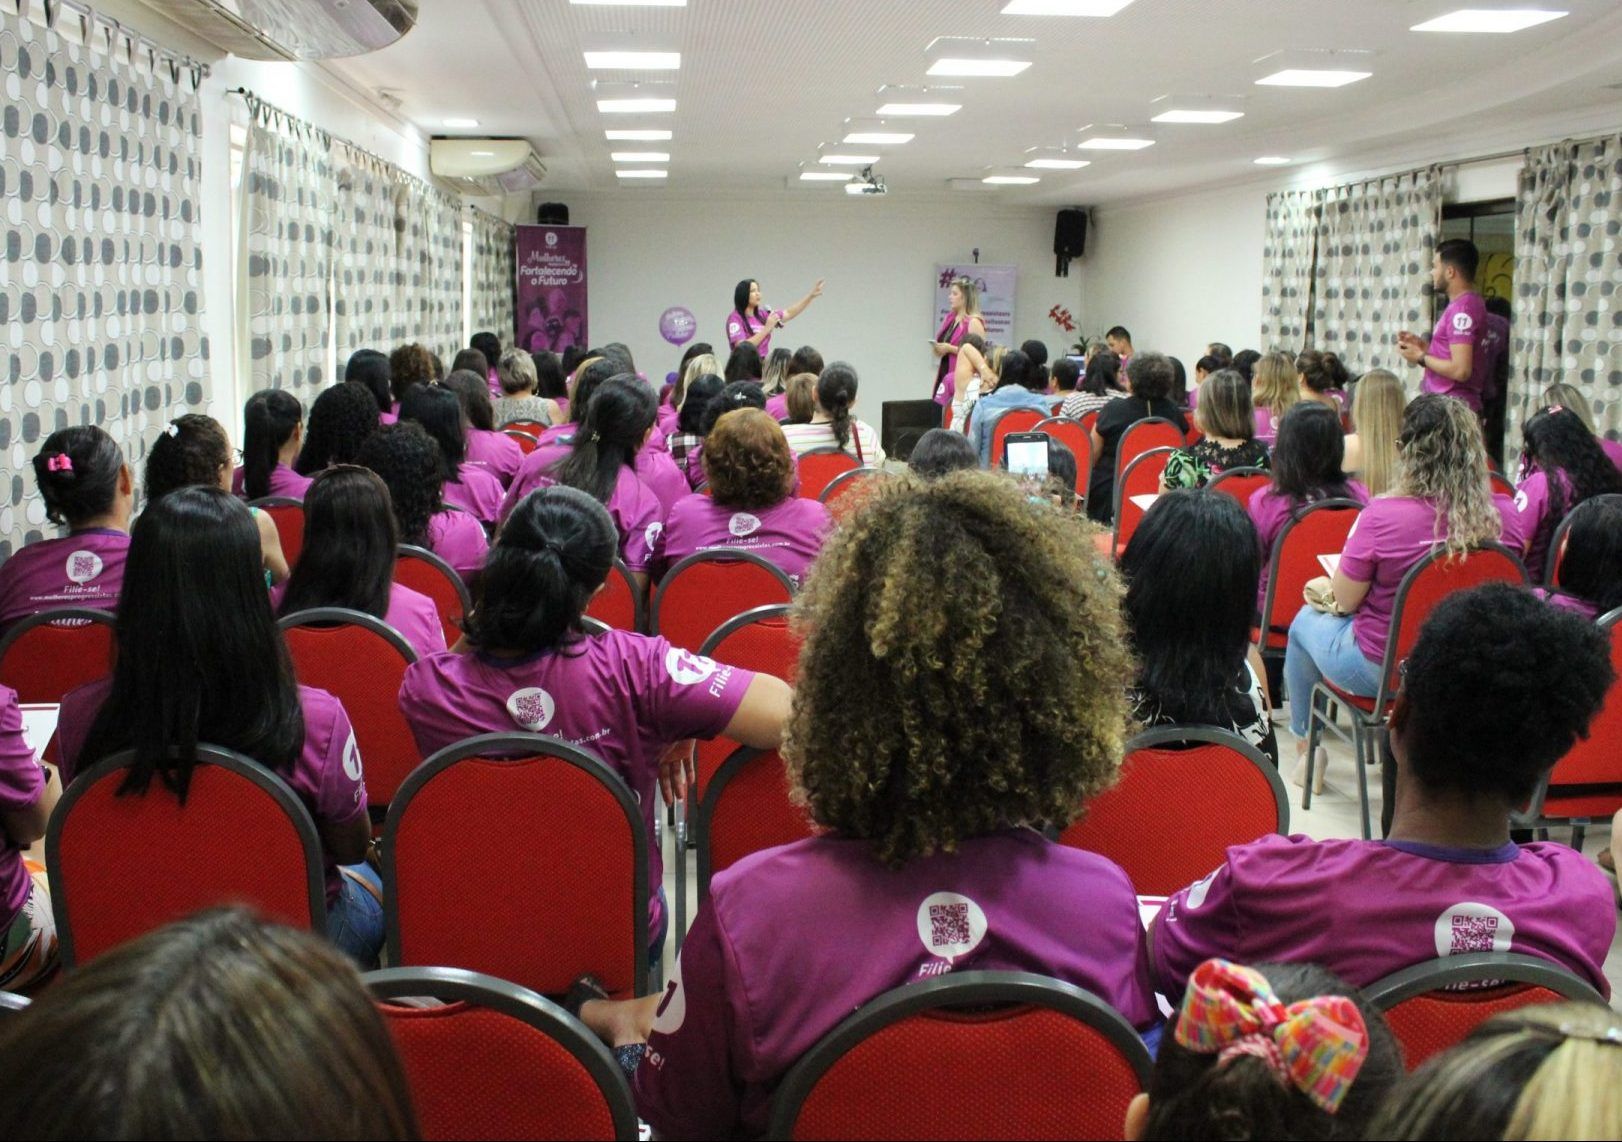 Mulheres se reúnem em Porto Velho para encontro sobre a participação feminina na política - progressistas - progressistas rondonia